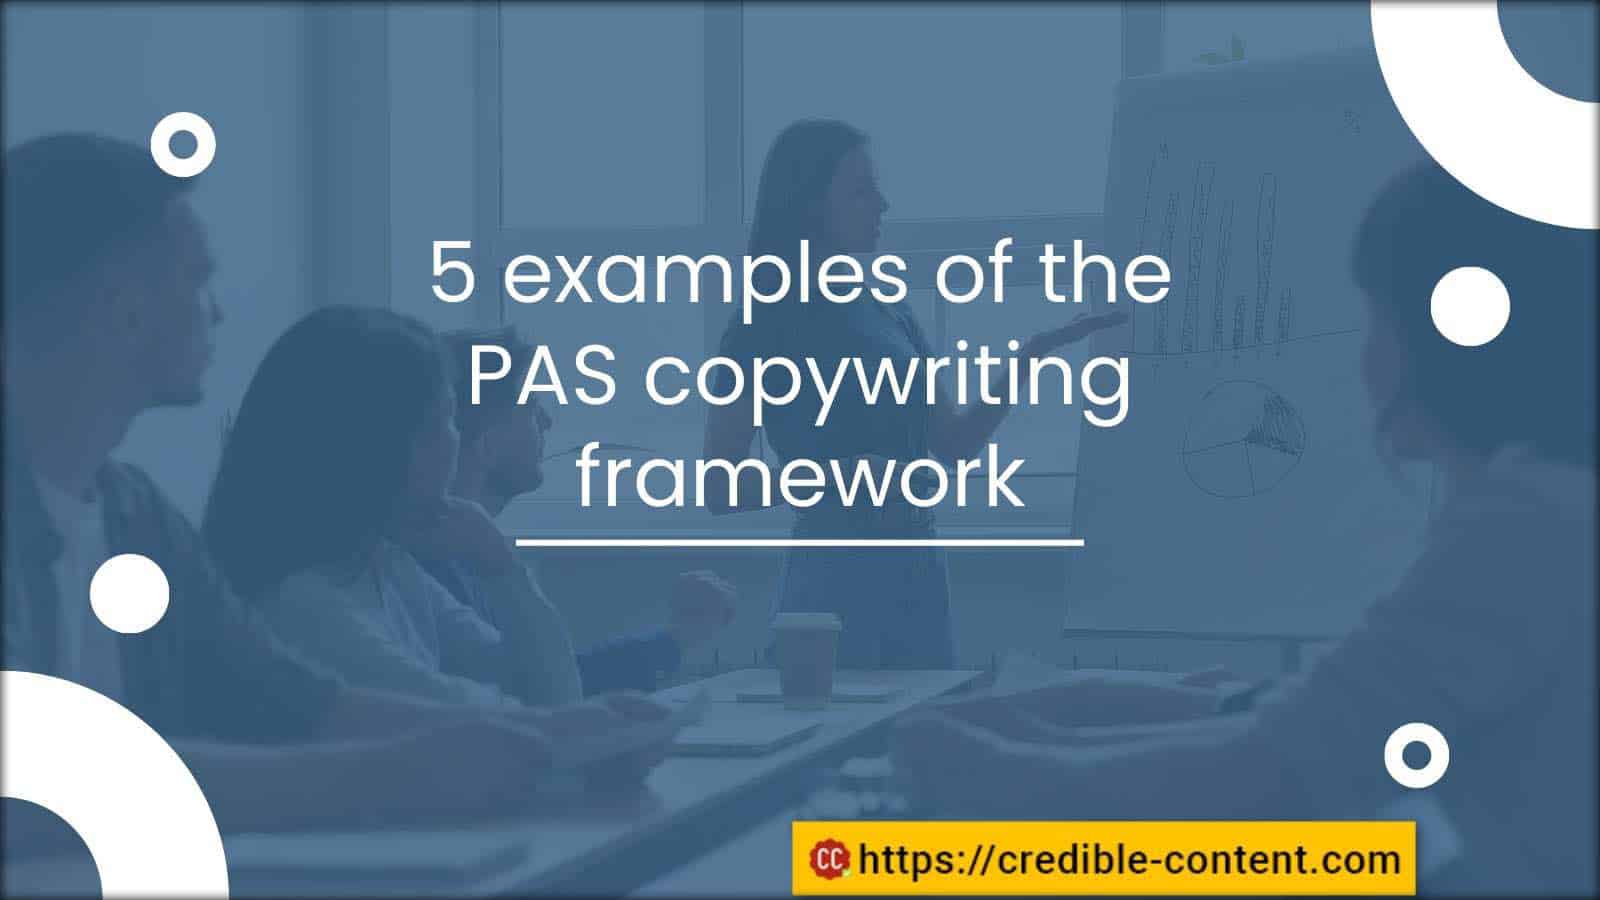 5 examples of the PAS copywriting framework